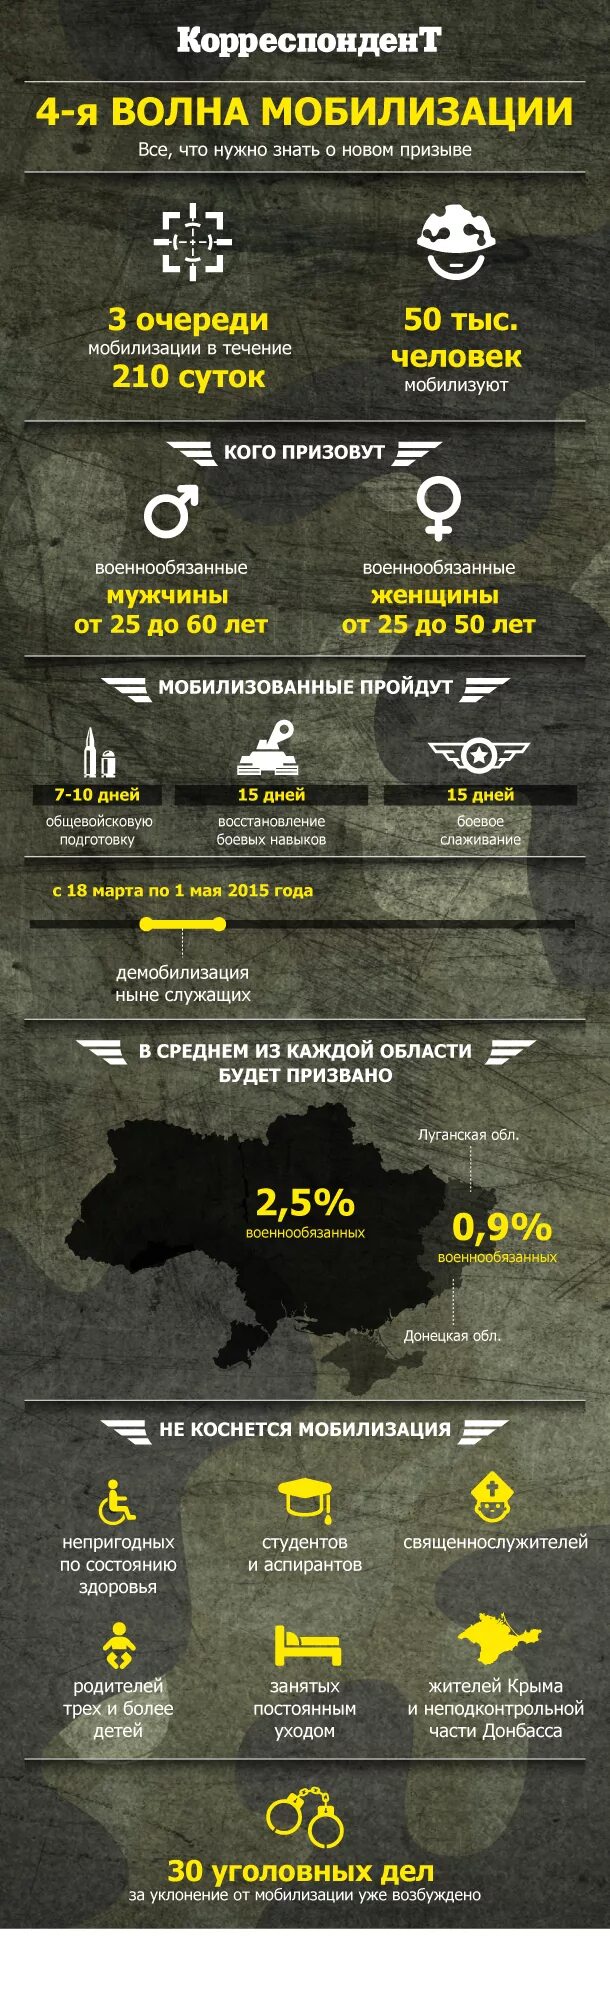 Вторая мобилизация кого будут призывать. Мобилизация в Украине очередность. Инфографика про мобилизацию волна. Очередность призыва при мобилизации. Мобилизация инфографика.